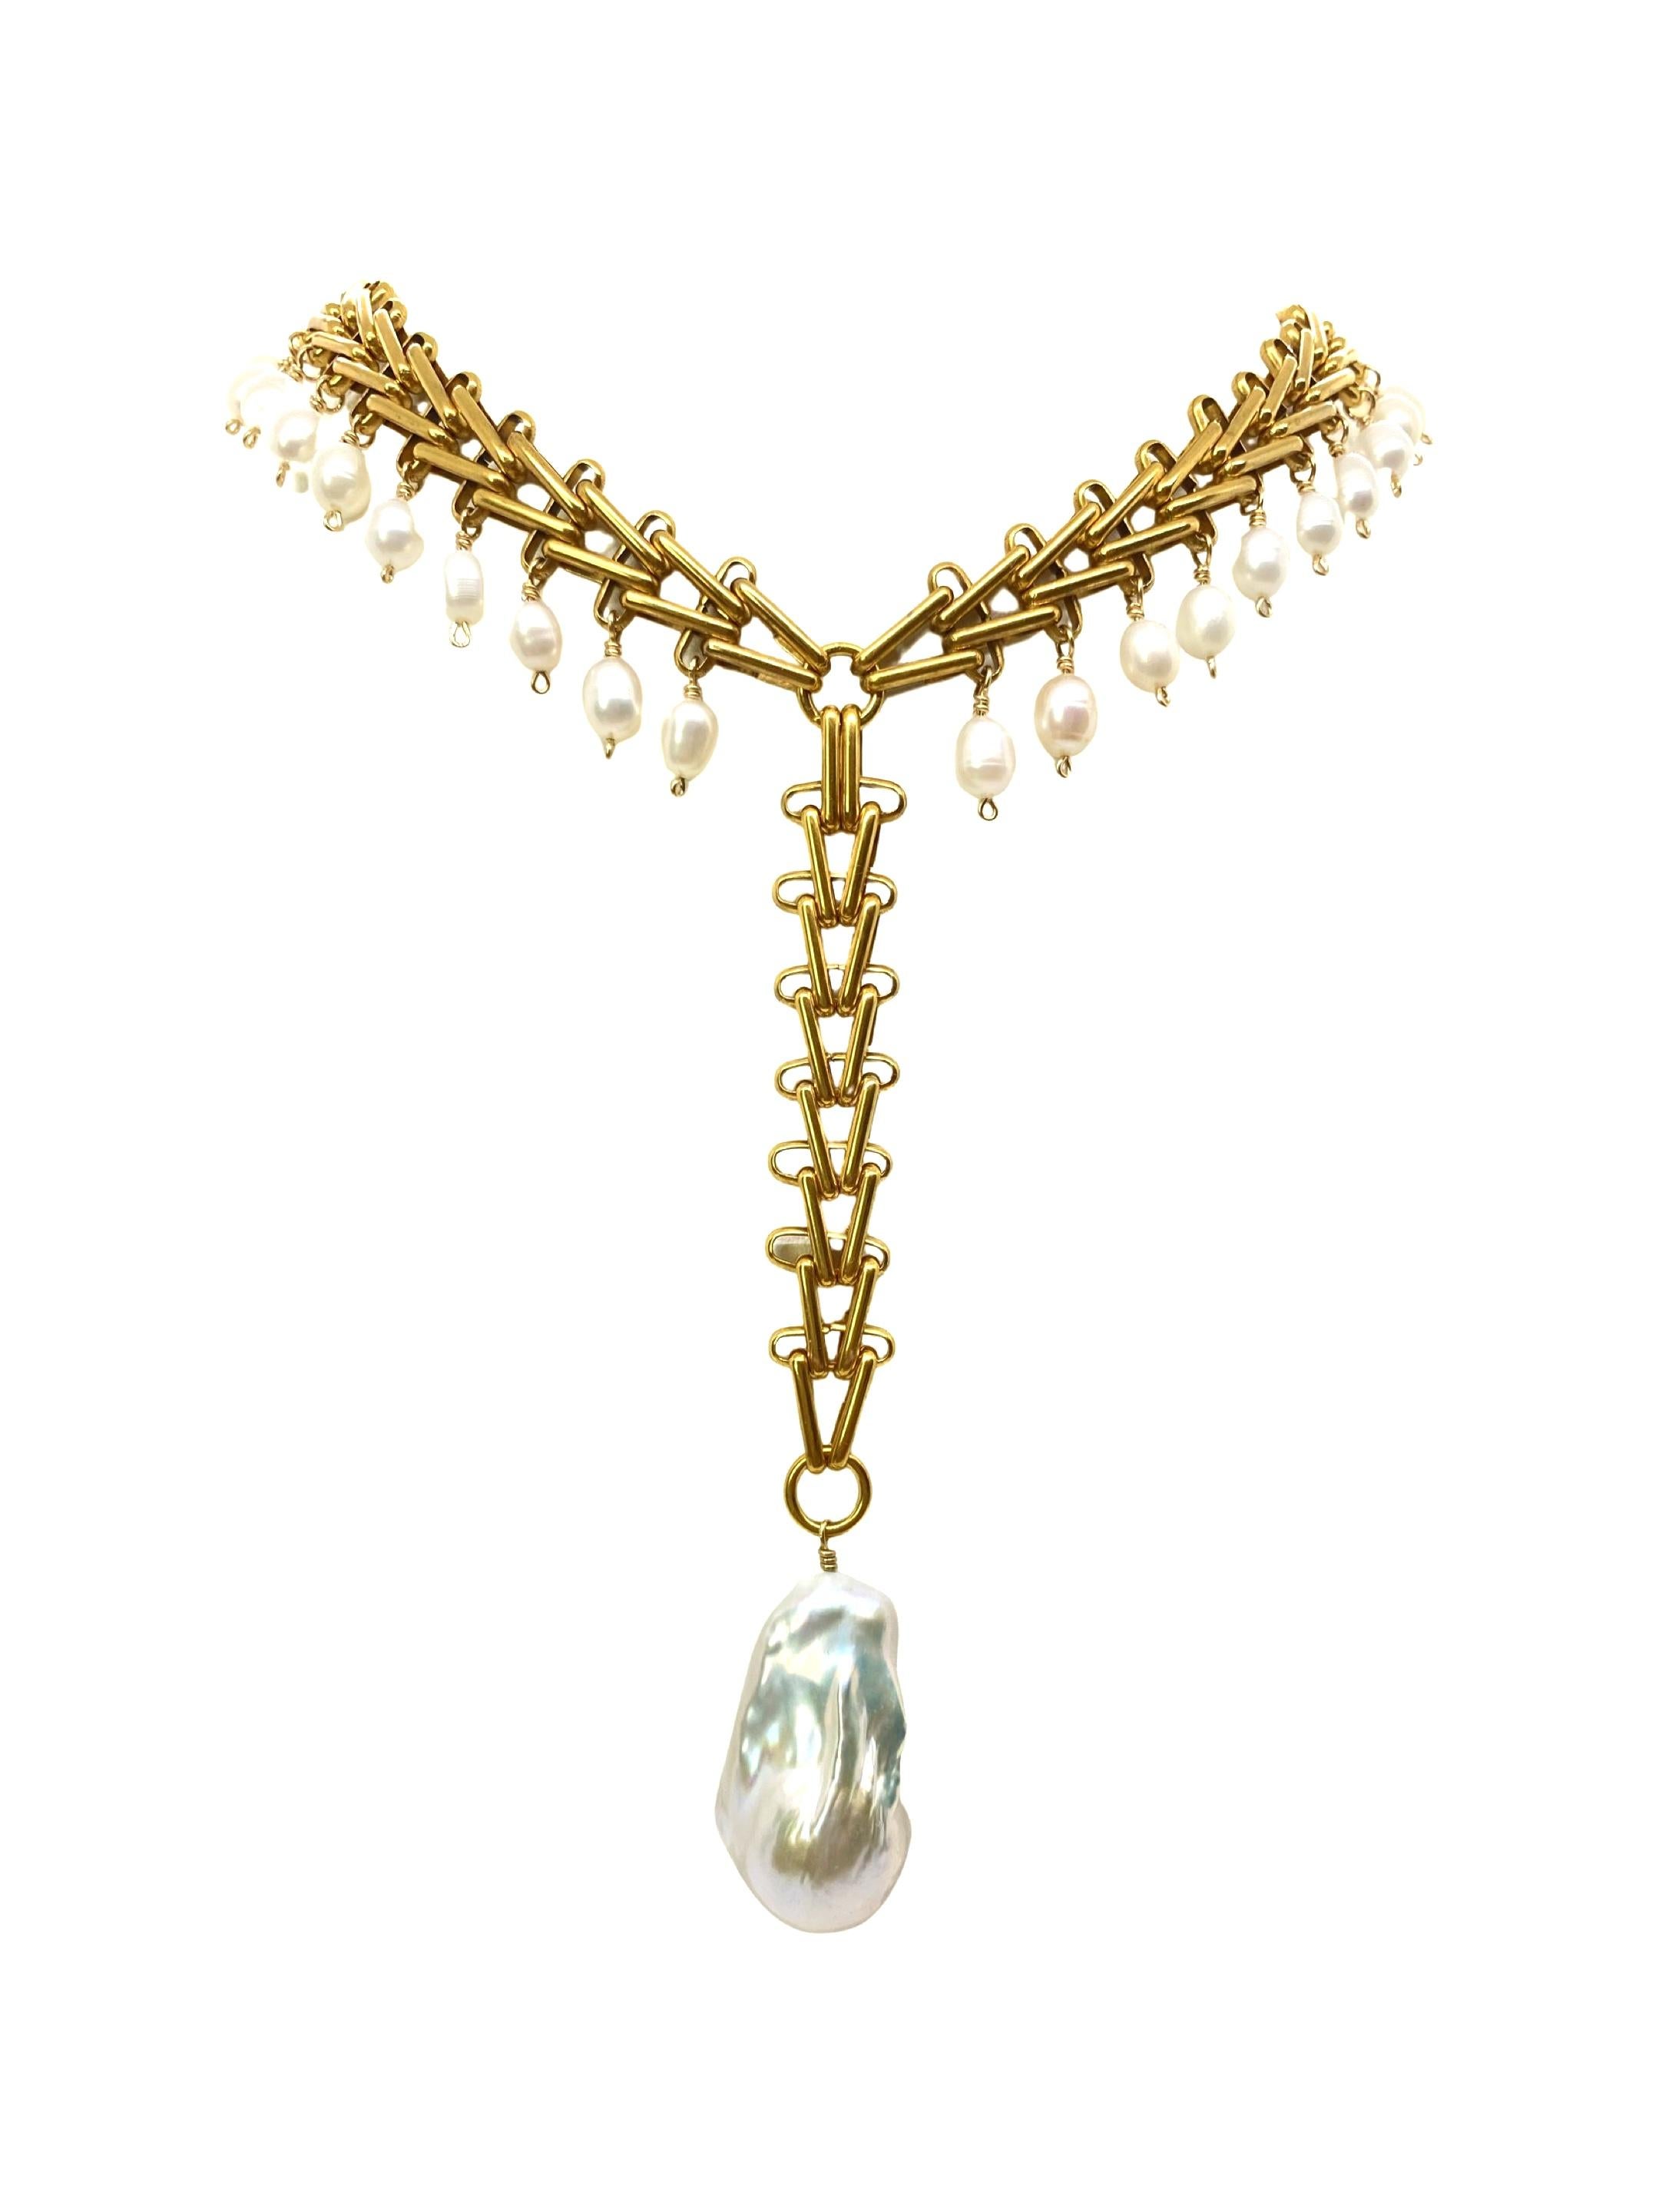 Le collier Victoria. Ce collier en chaîne en forme de V, orné de perles d'eau douce et d'une grosse perle baroque de forme unique, met en valeur n'importe quelle tenue. 

Veuillez noter qu'il n'y a pas deux perles identiques. La taille, la forme et